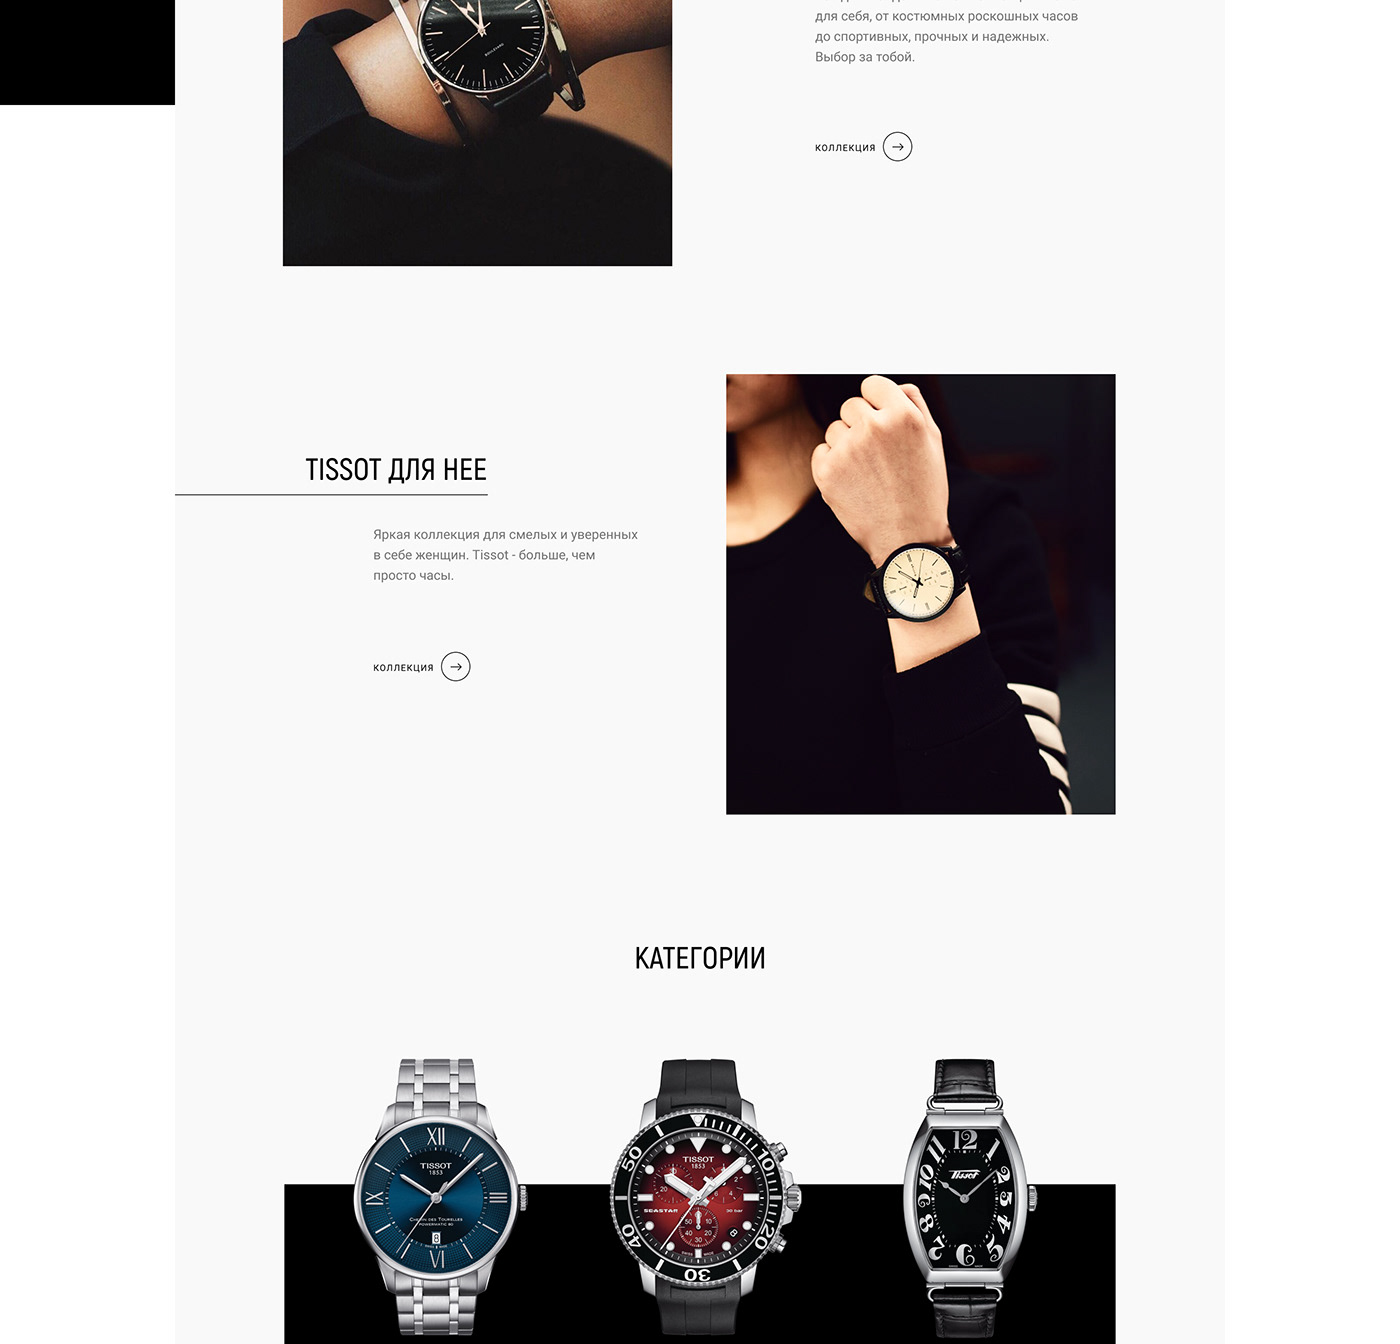 design redesign TISSOT watch Webdesign